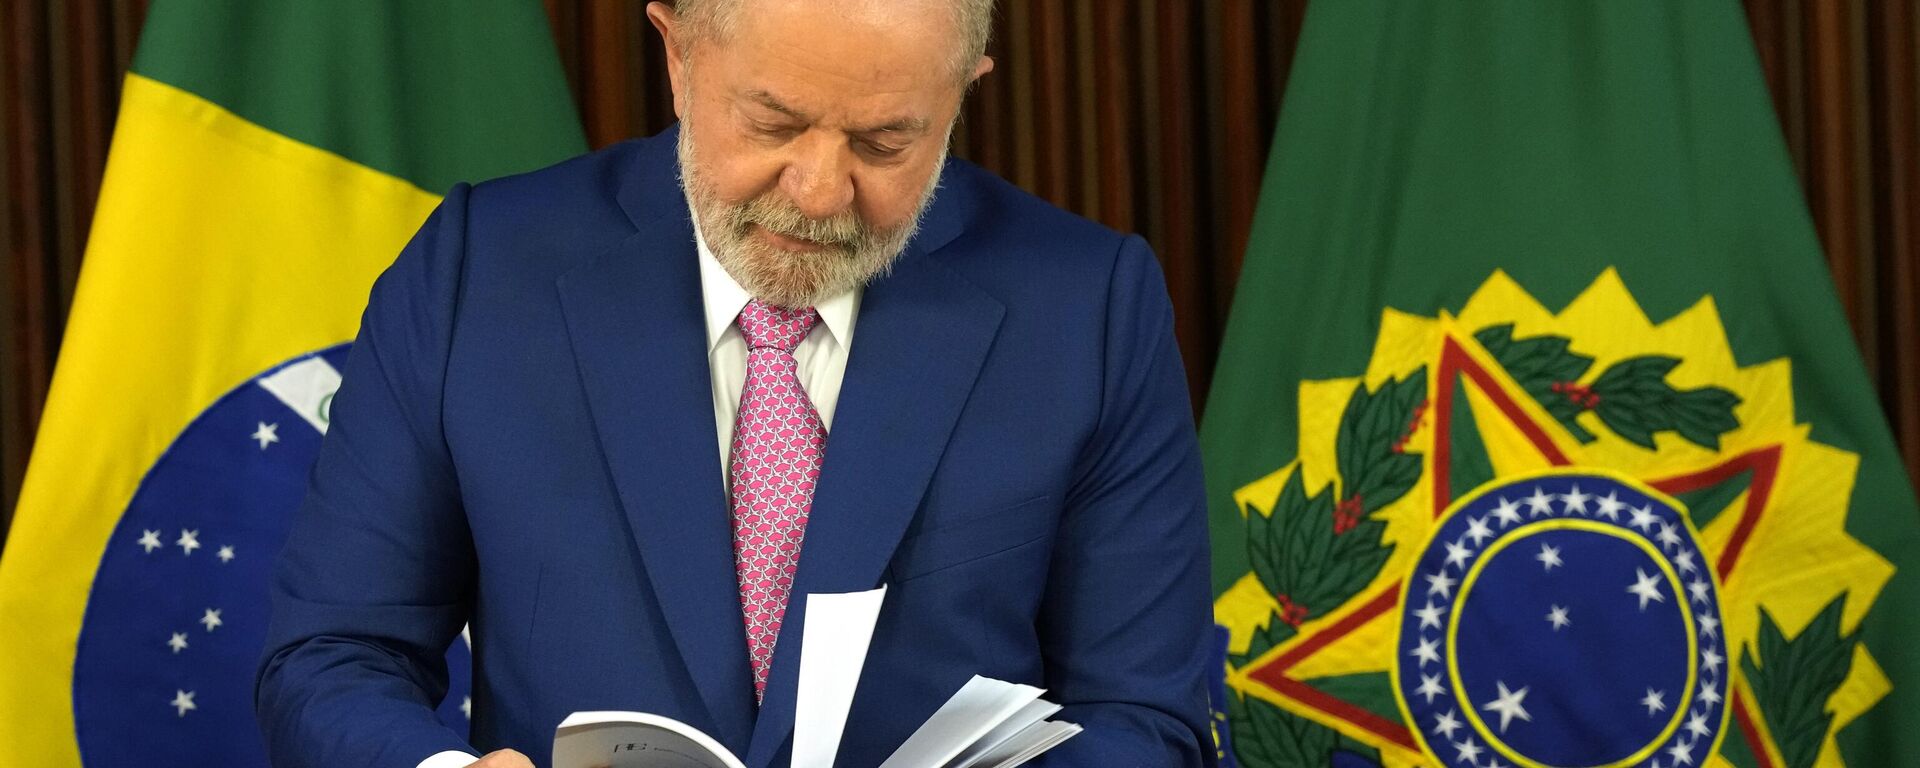 O presidente do Brasil, Luiz Inácio Lula da Silva, segura documentos no início de sua primeira reunião ministerial desde sua posse no Palácio da Alvorada em Brasília, 6 de janeiro de 2023 - Sputnik Brasil, 1920, 07.01.2023